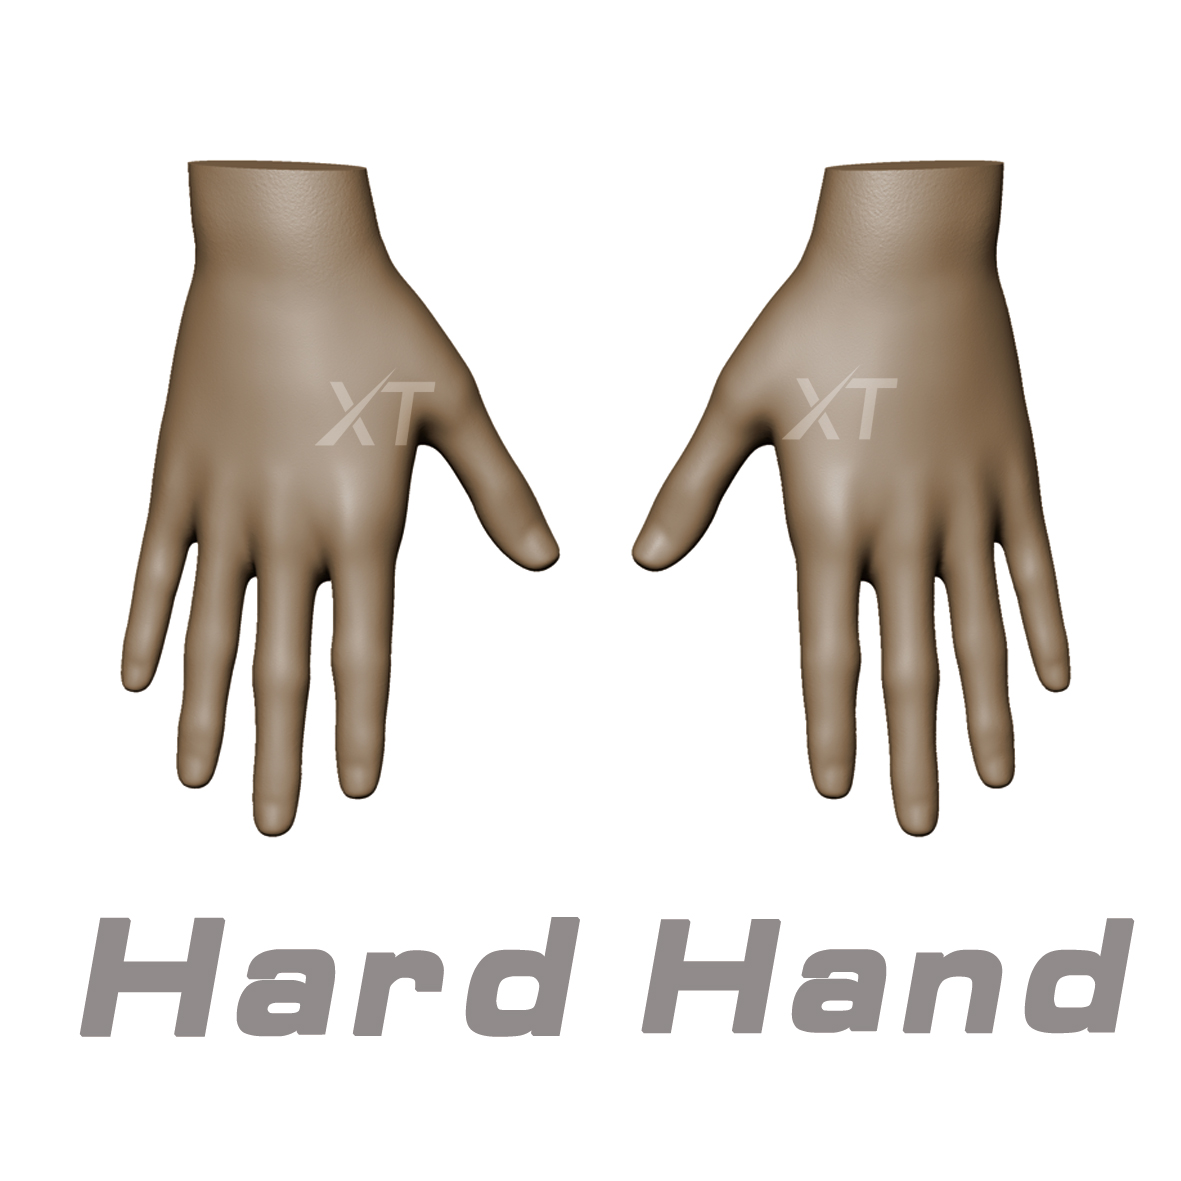 Hard hand